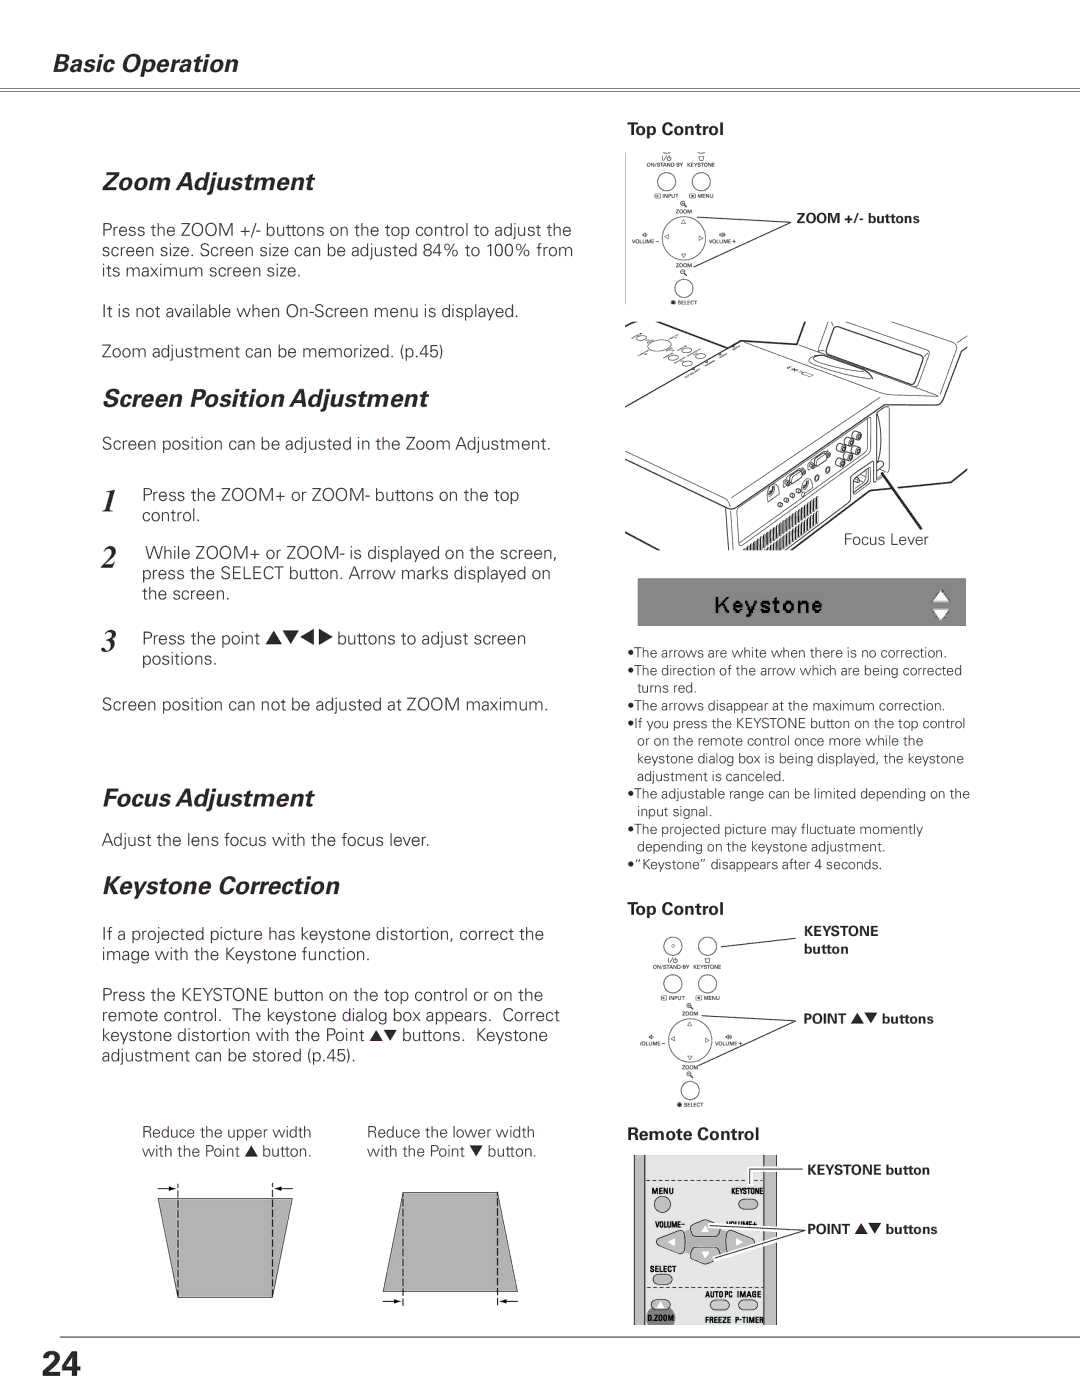 Sanyo PLC-XL50 Basic Operation Zoom Adjustment, Screen Position Adjustment, Focus Adjustment, Keystone Correction 